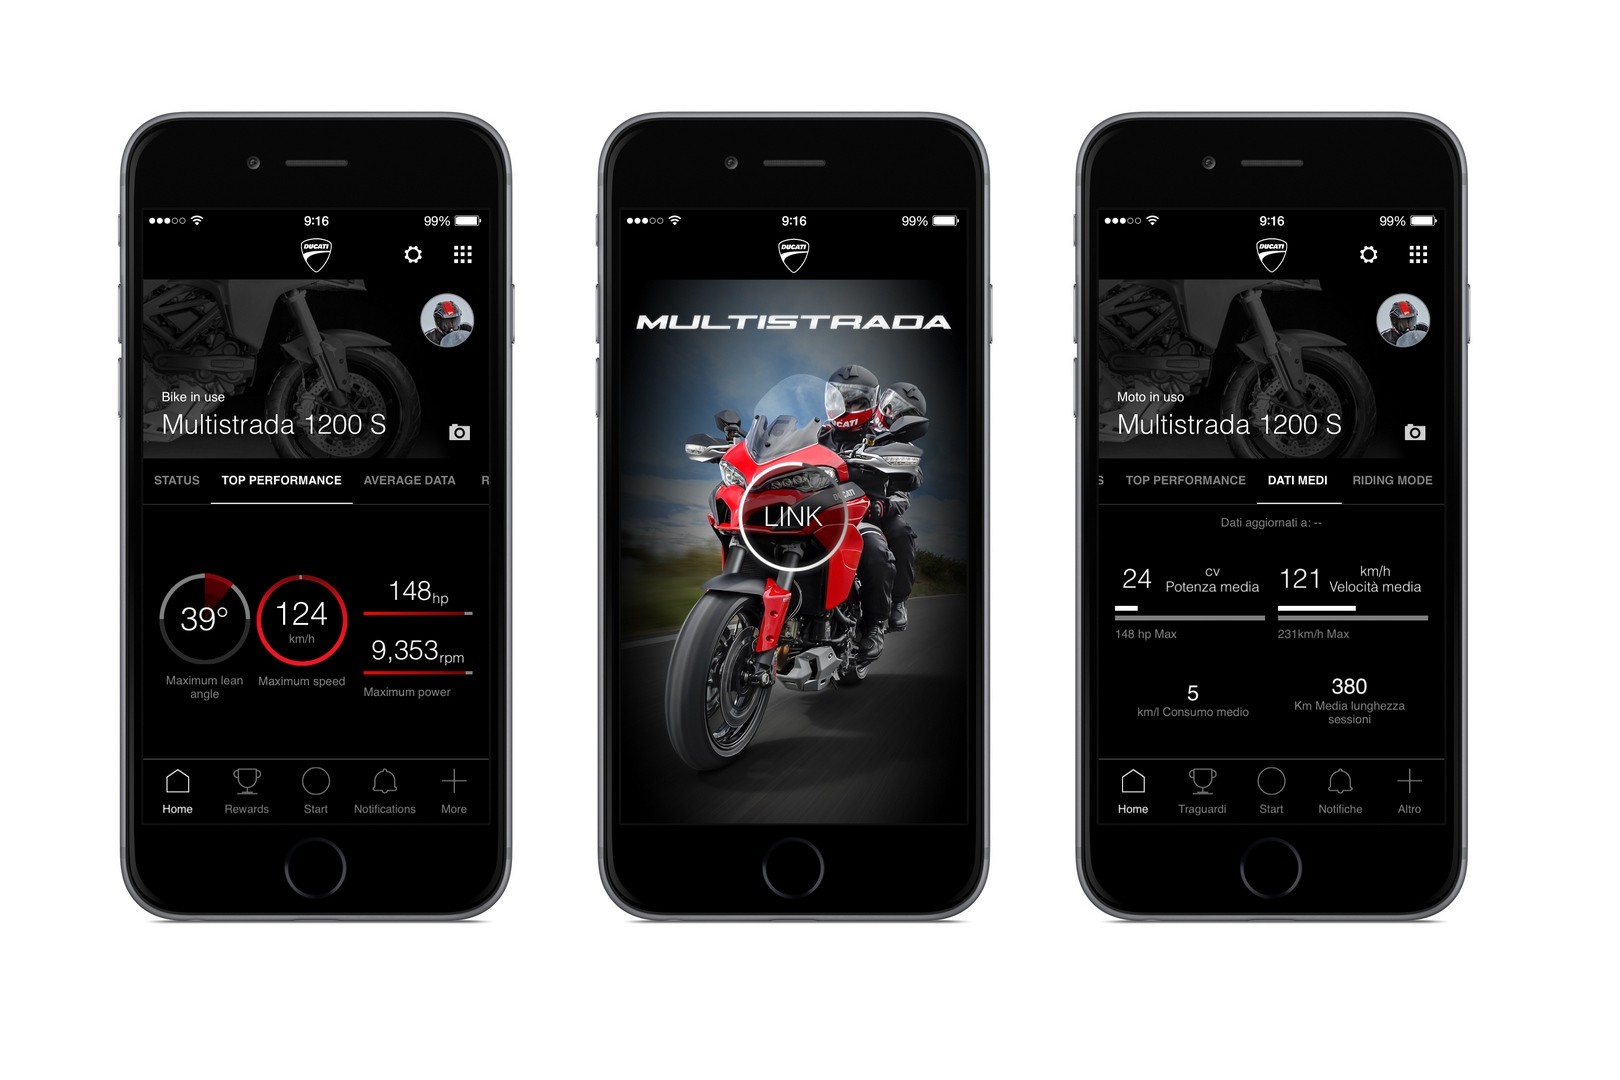 Xe Ducati có ứng dụng kết nối smartphone - ảnh2